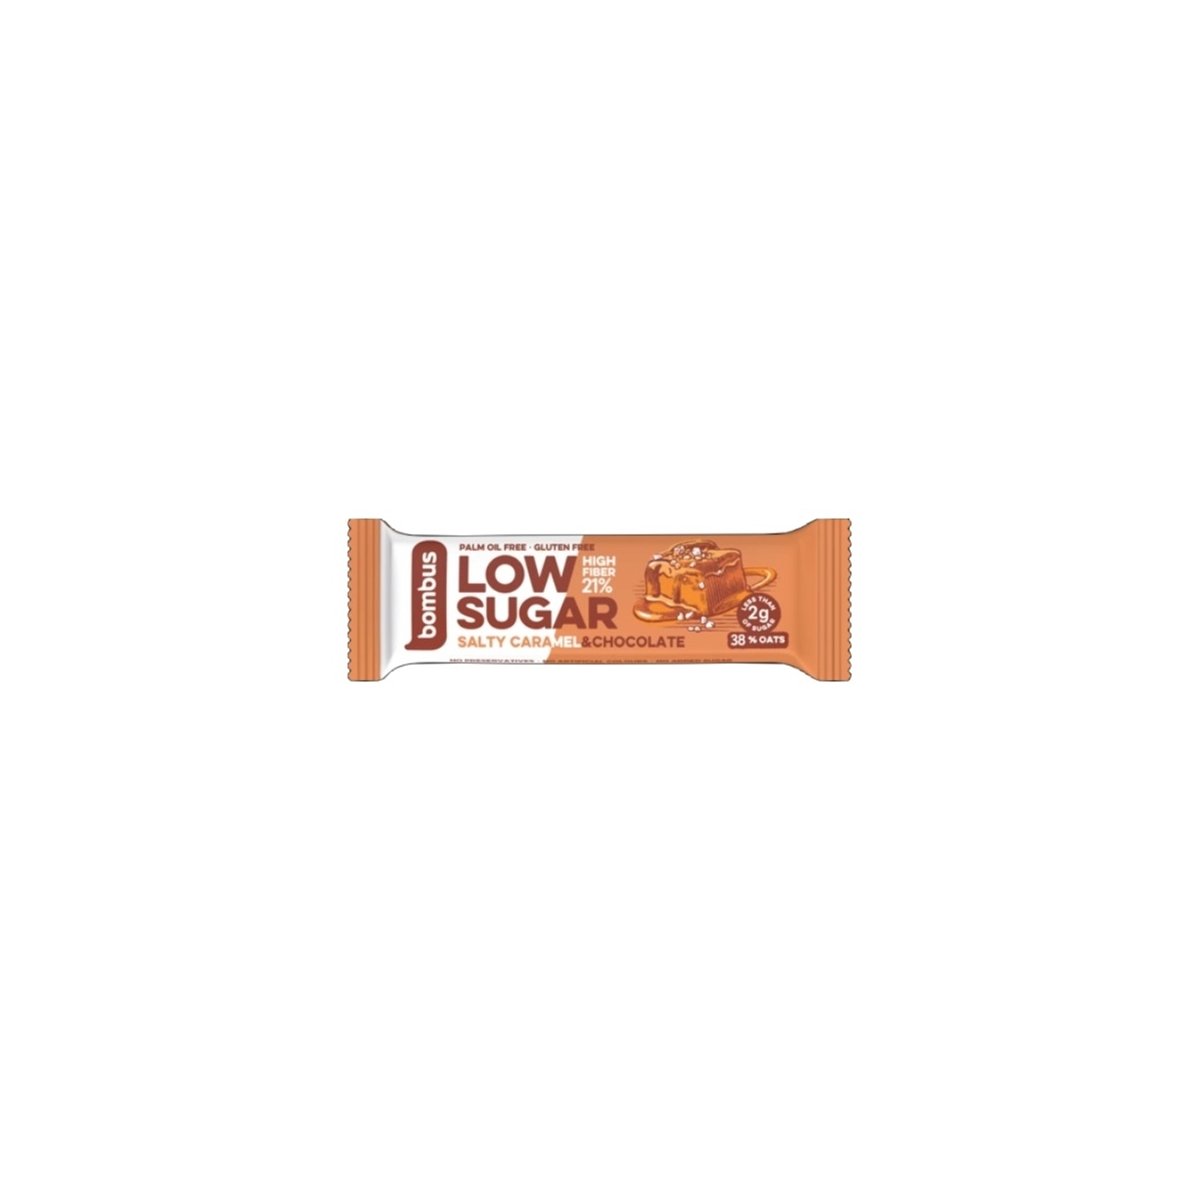 Baton Low Sugar słony karmel - czekolada bezglutenowy 40g - Bombus